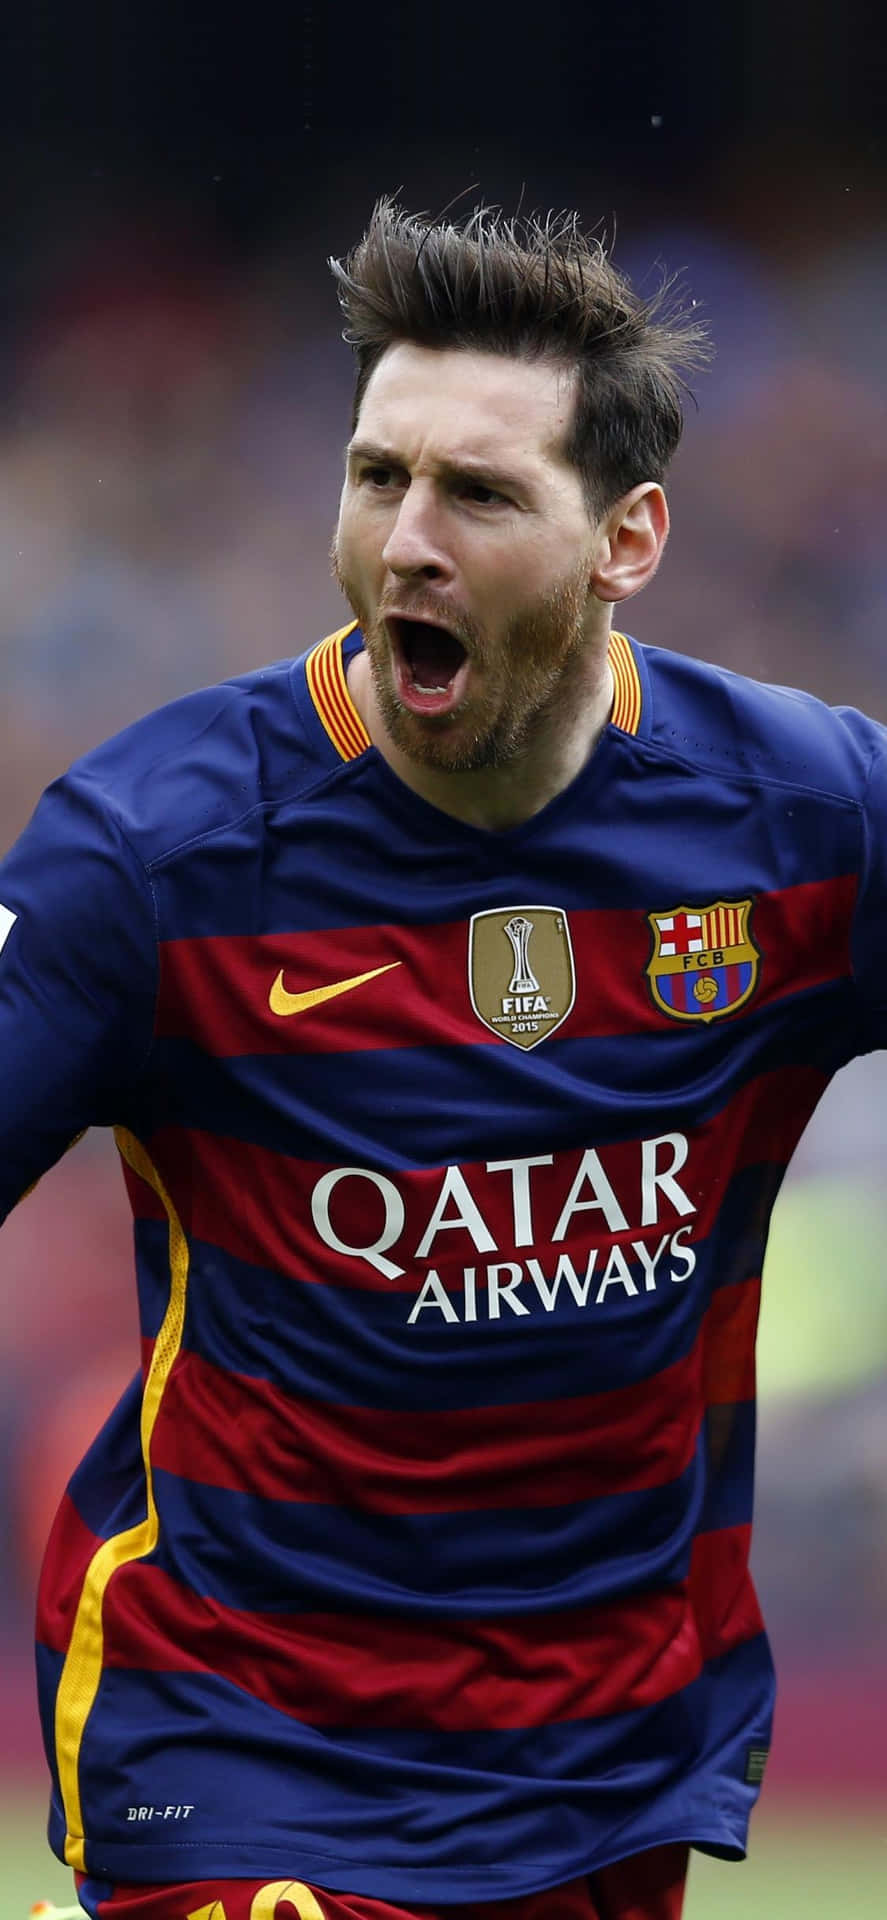 Prepáratepara Los Juegos Con El Nuevo Iphone De Messi. Fondo de pantalla